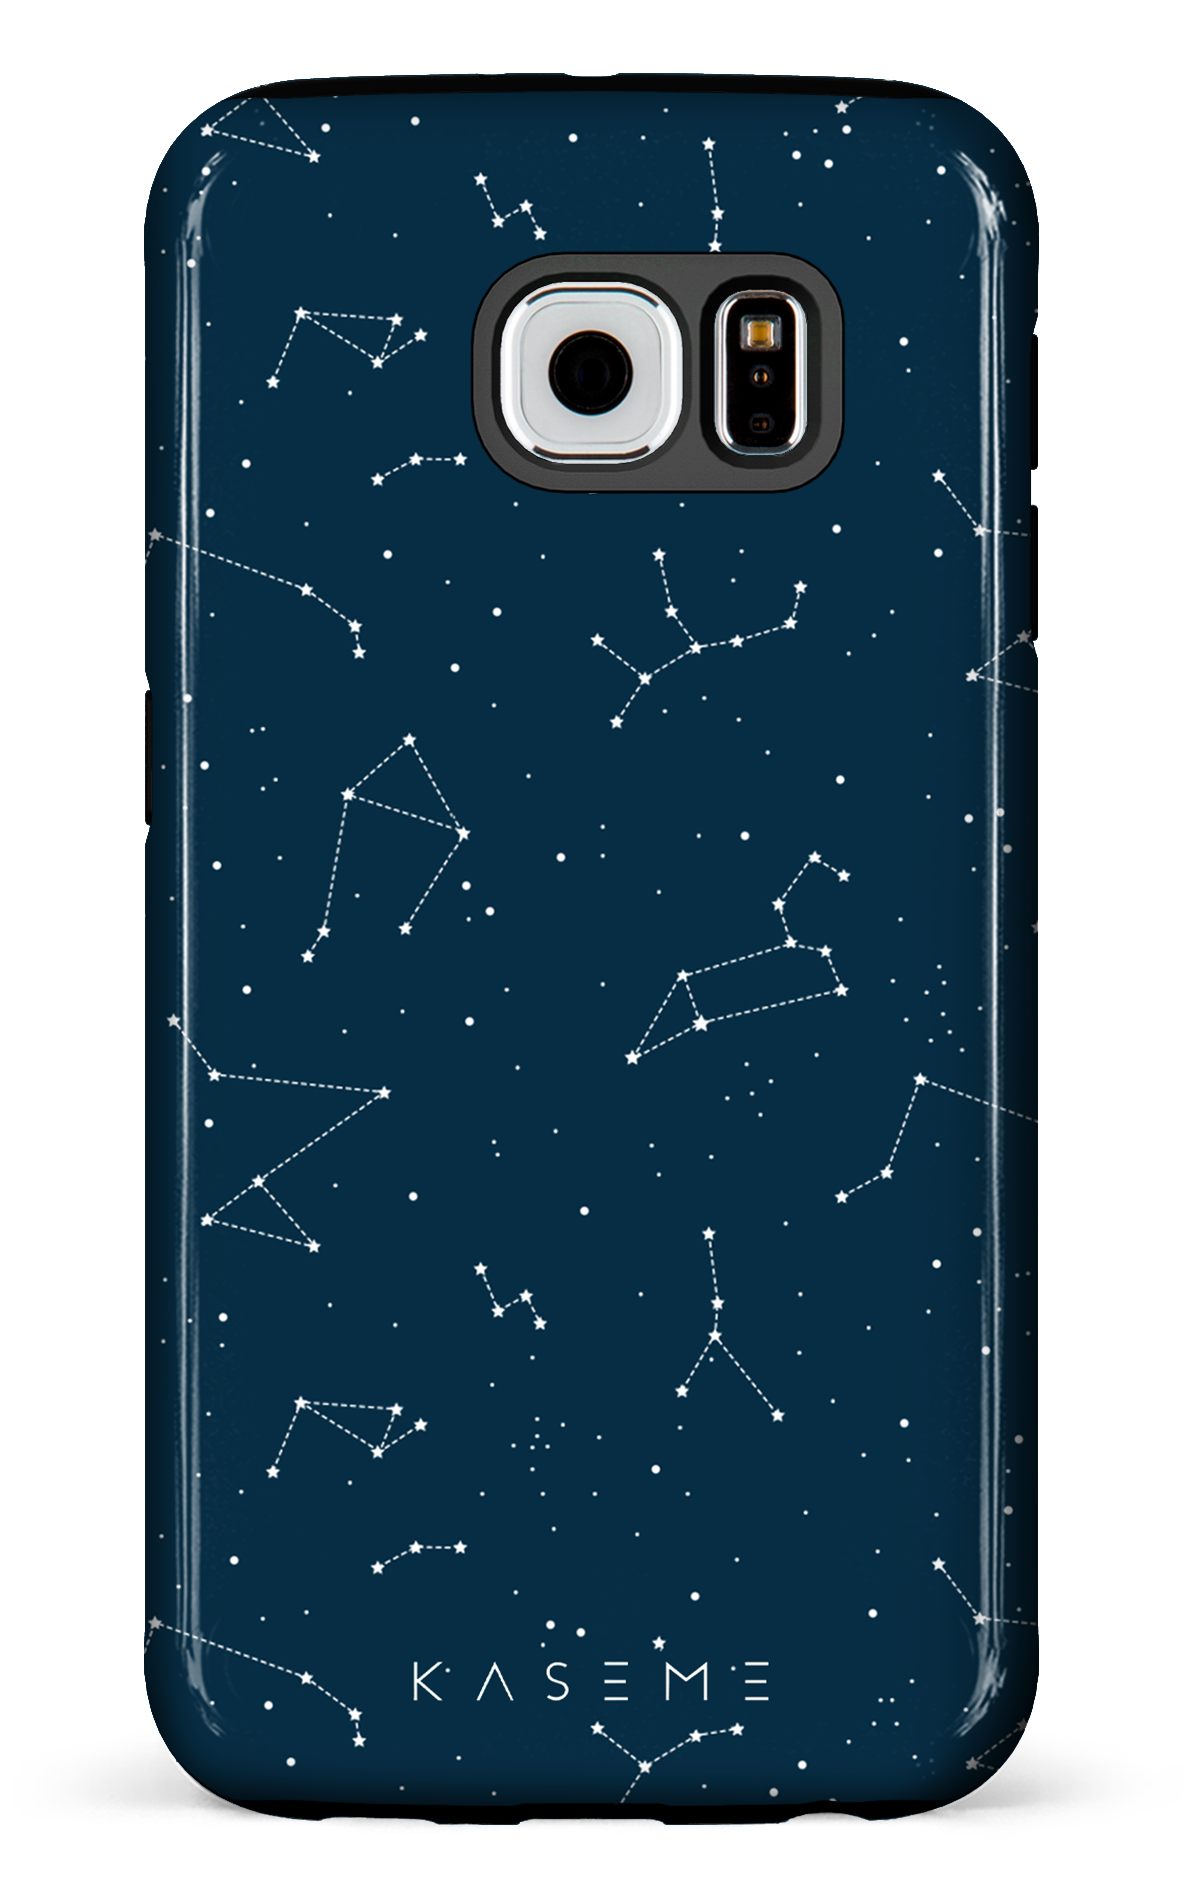 Cosmos - Galaxy S6